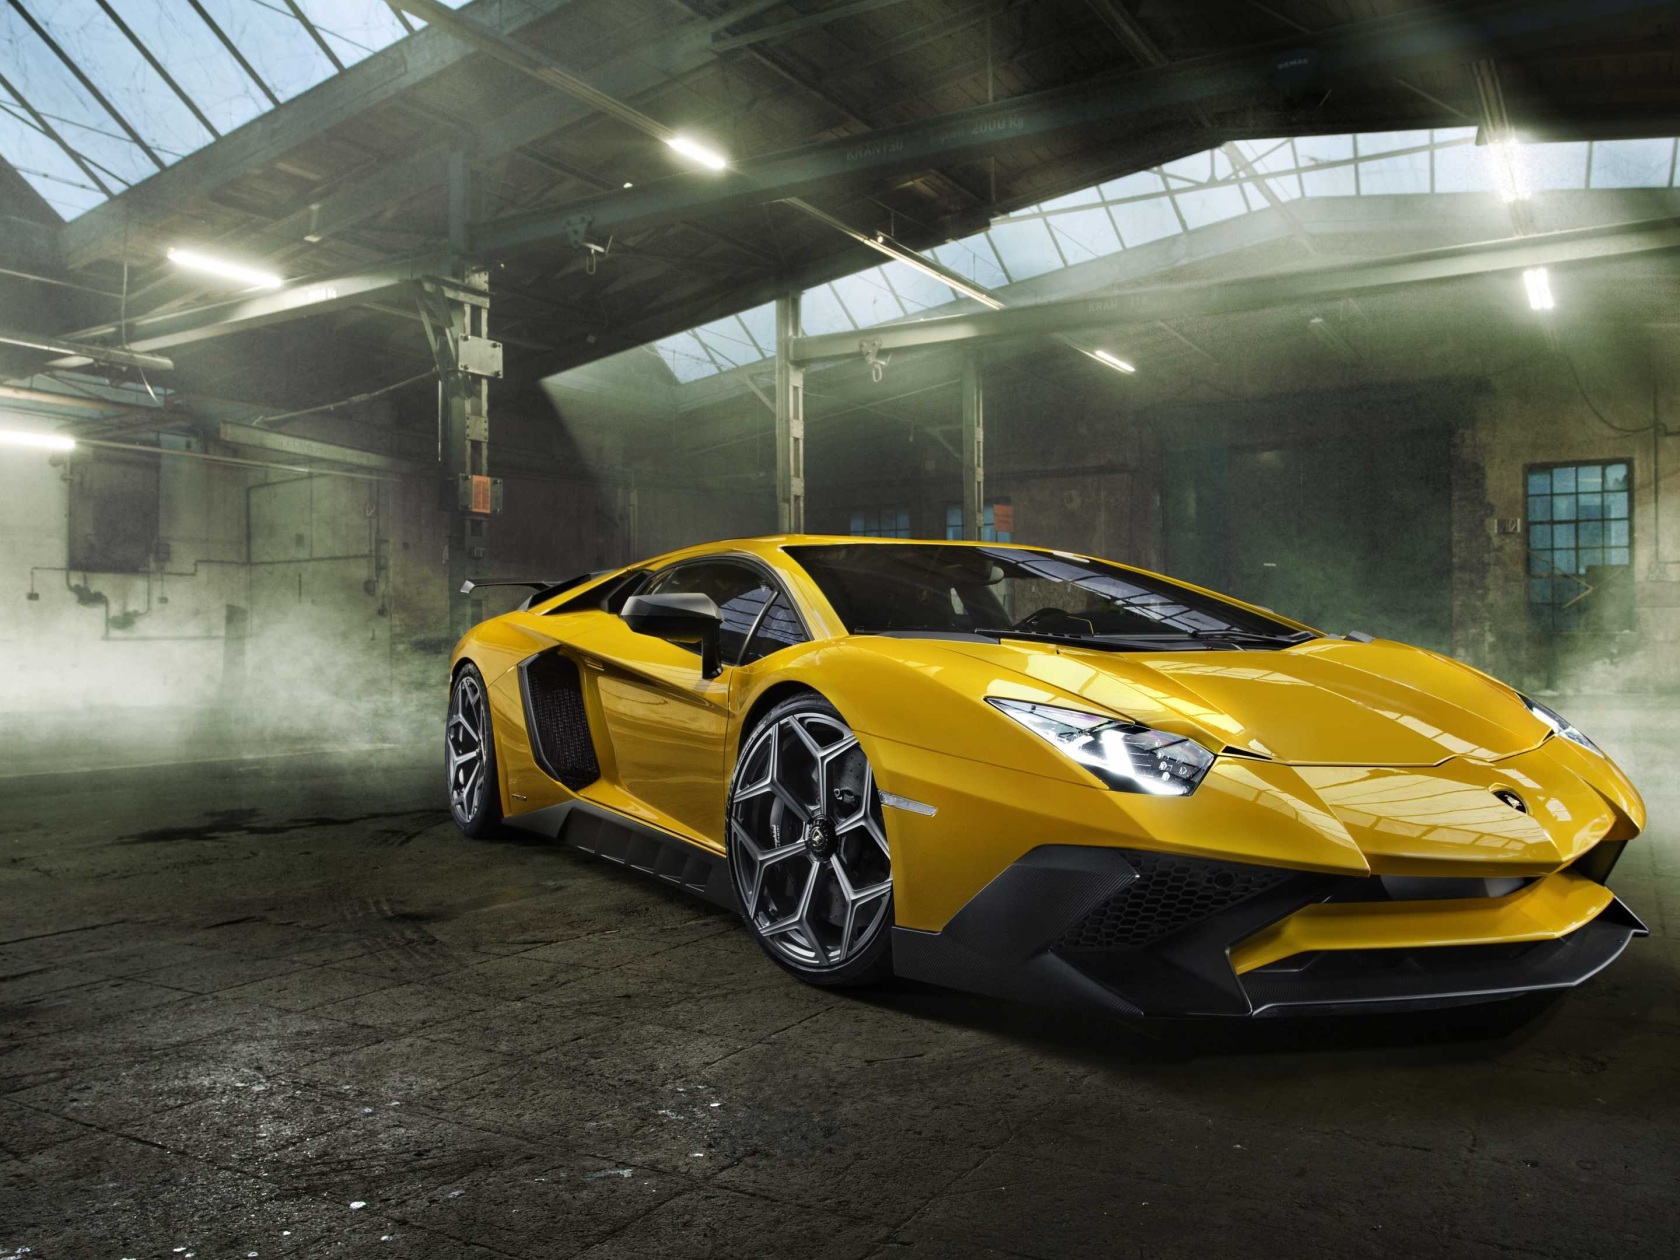 Biểu tượng của sức mạnh và tốc độ, chiếc xe Lamborghini Aventador sẽ trở nên đẳng cấp hơn cùng với hình ảnh nền 4K đầy sắc nét. Khám phá vẻ đẹp của chiếc xe thể thao tuyệt vời này từ mọi góc độ nhờ hình nền chất lượng cao.